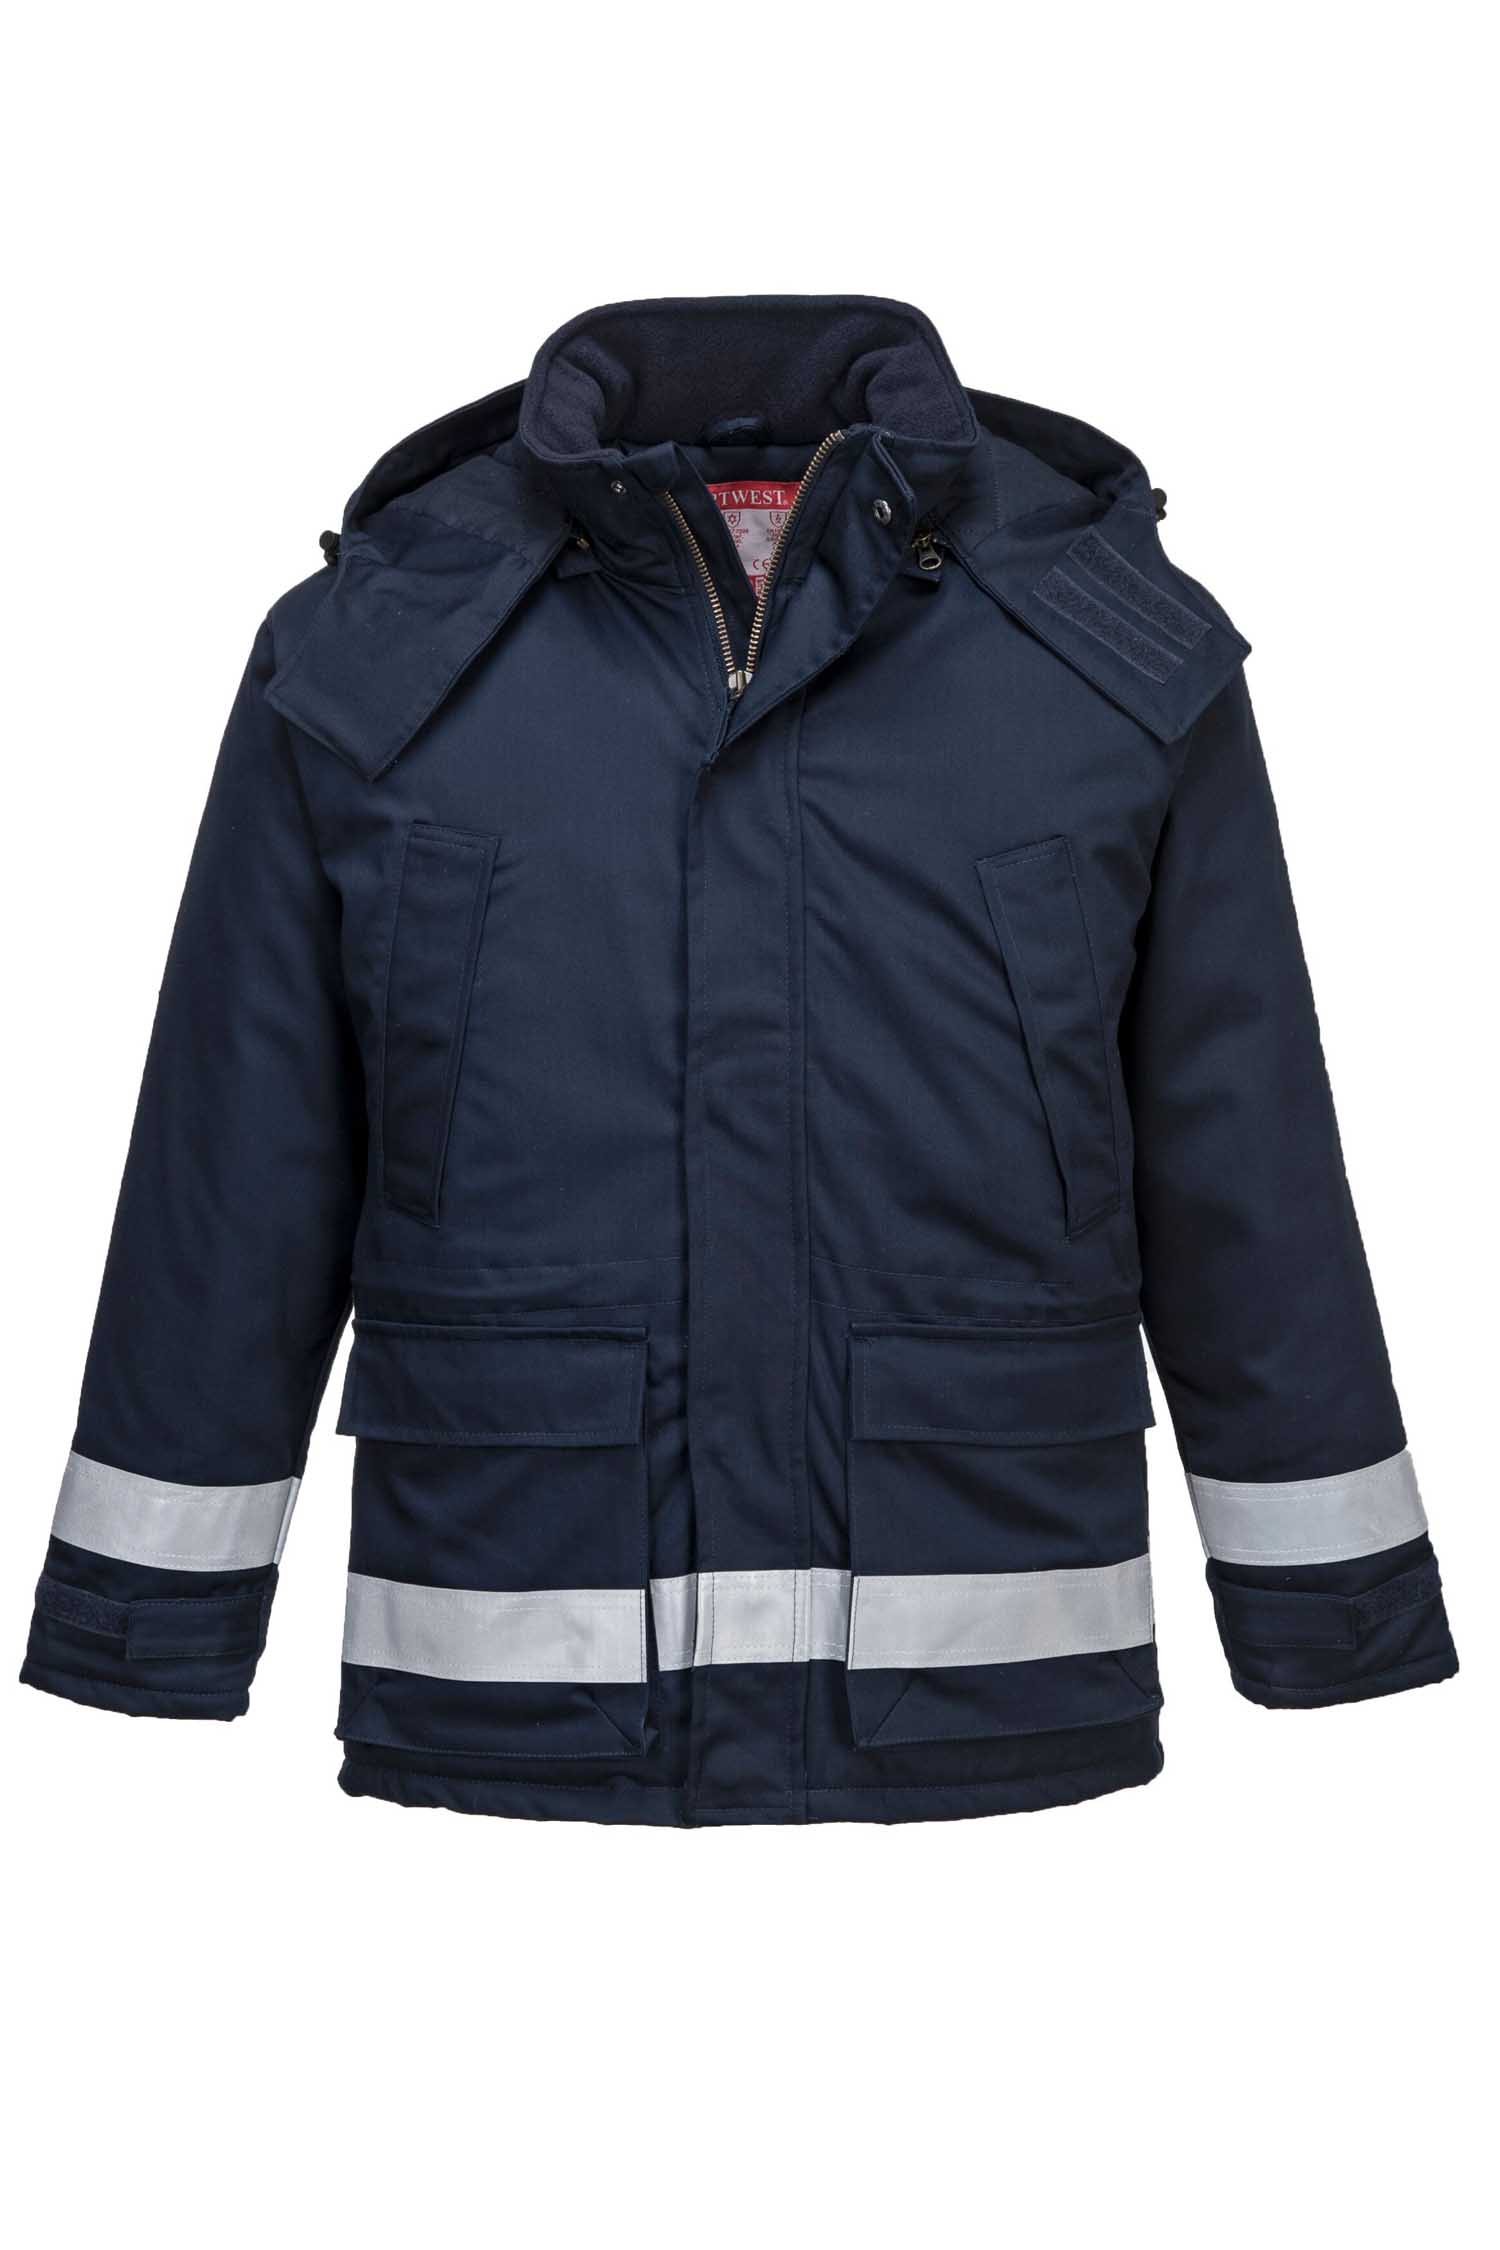 Куртка рабочая огнестойкая антистатическая утепленная зимняя Portwest FR59 - Фото 1